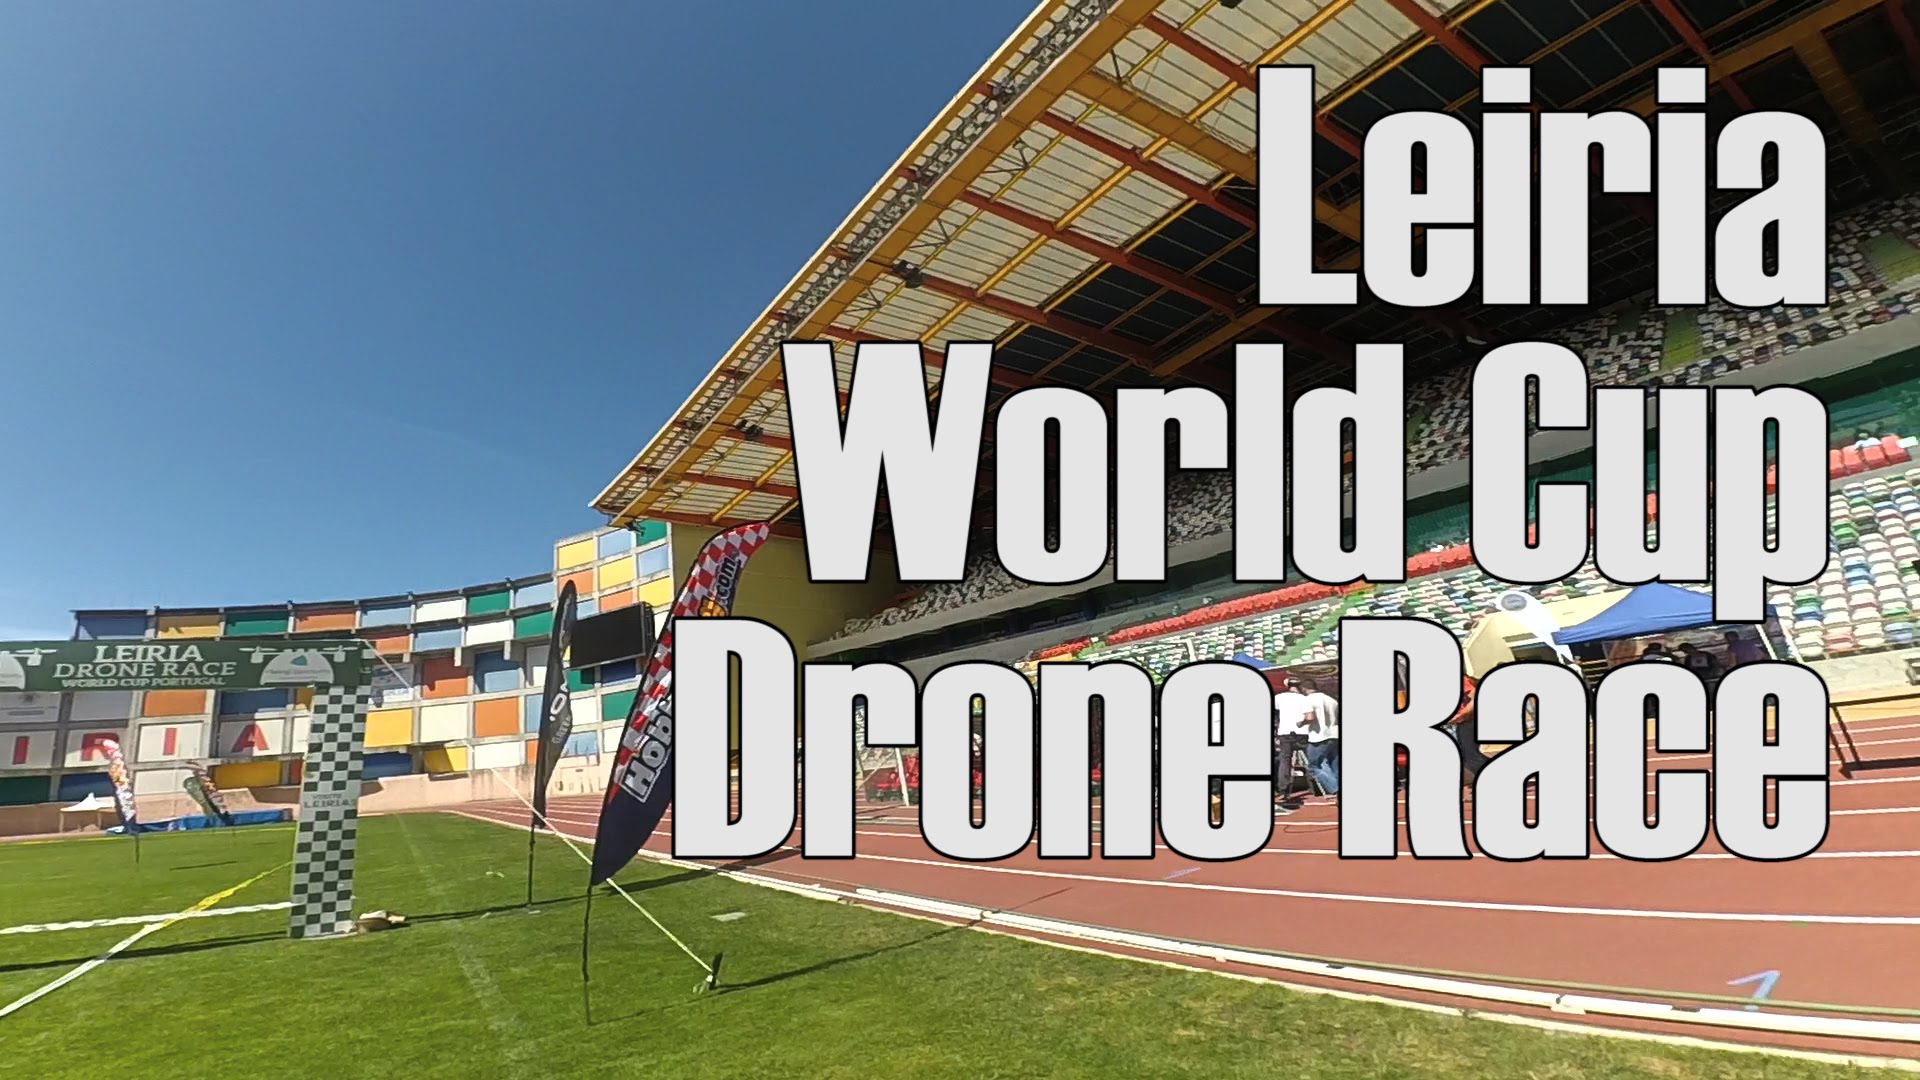 Leiria World Cup Drone Race | FPV